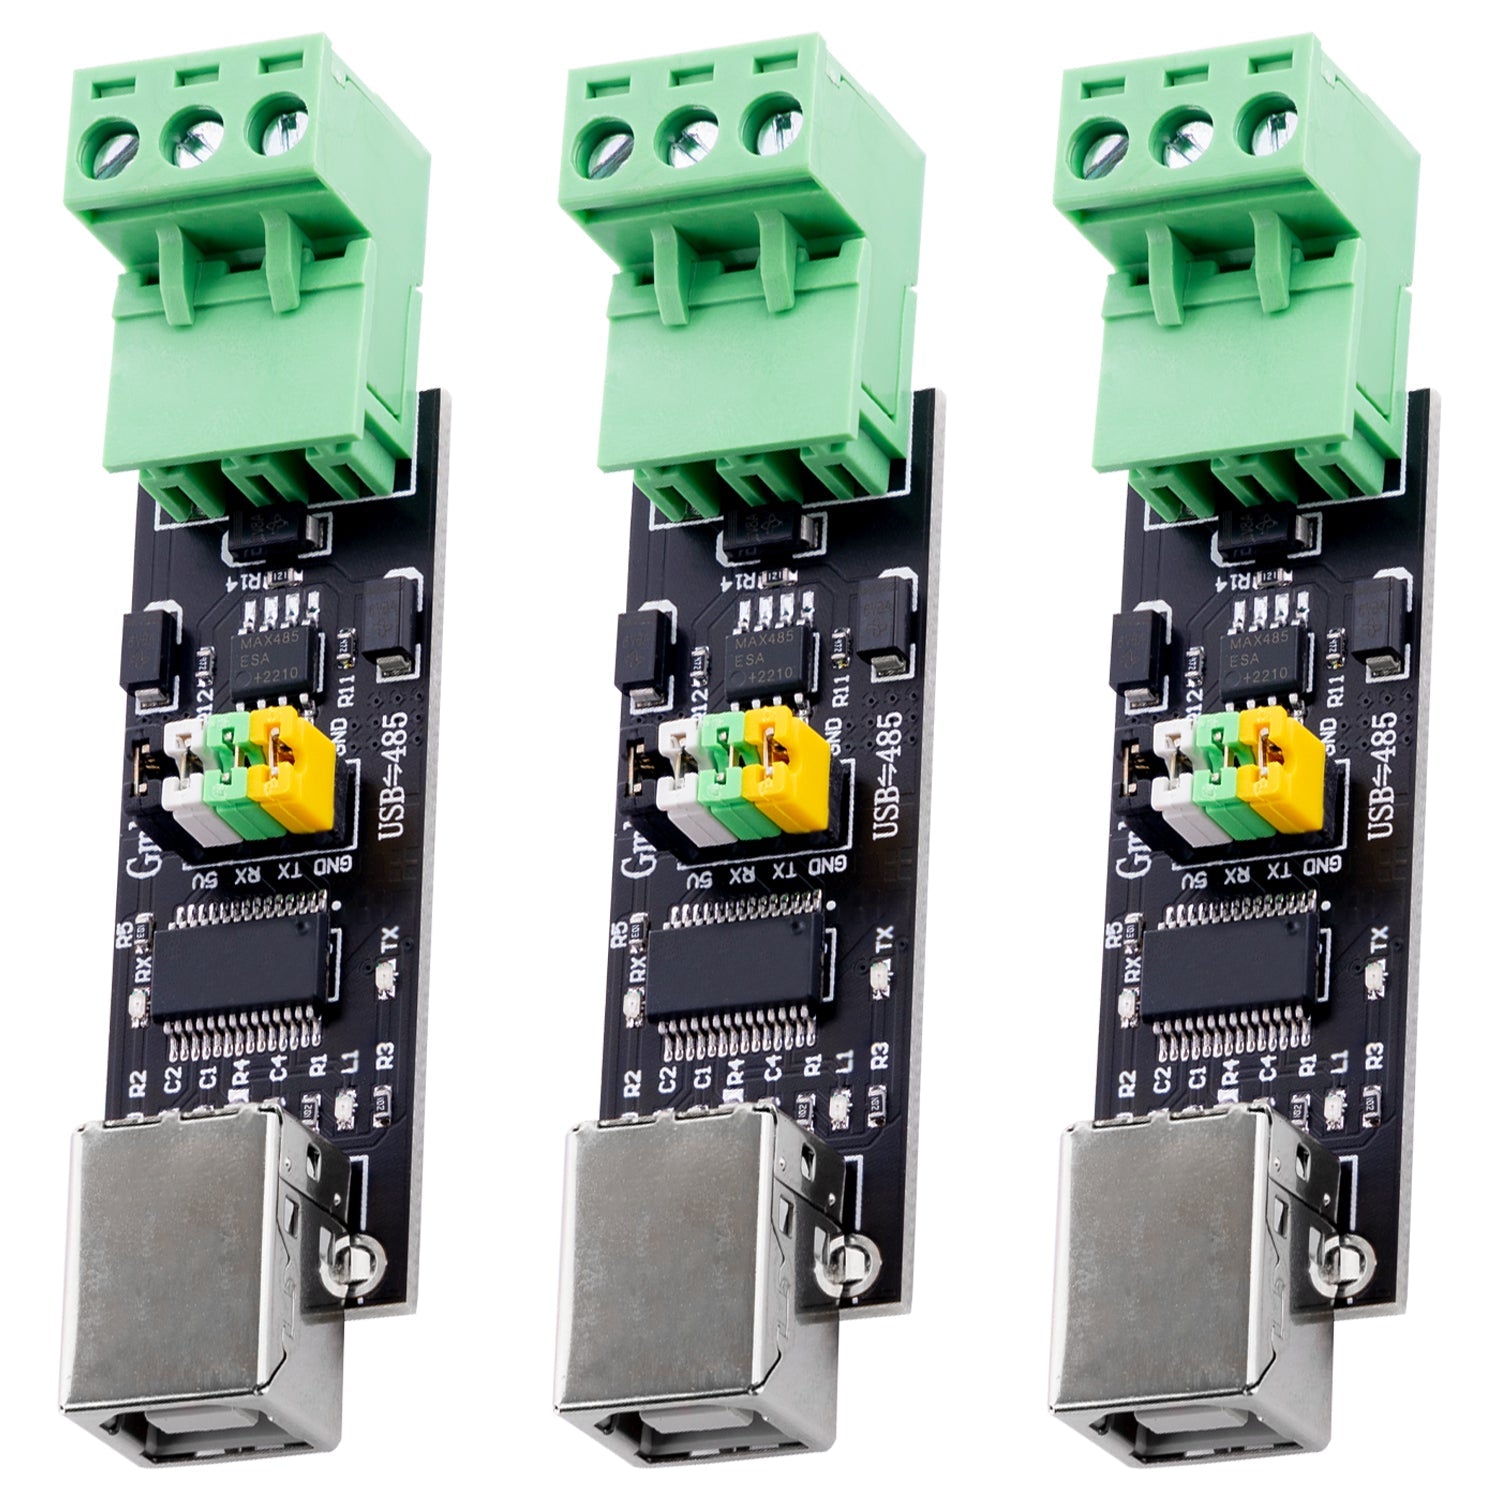 FT232 USB 2.0 zu TTL RS485 Seriell zu USB Adapter | Serieller Konverter Adapter Modul Interface Board - AZ-Delivery